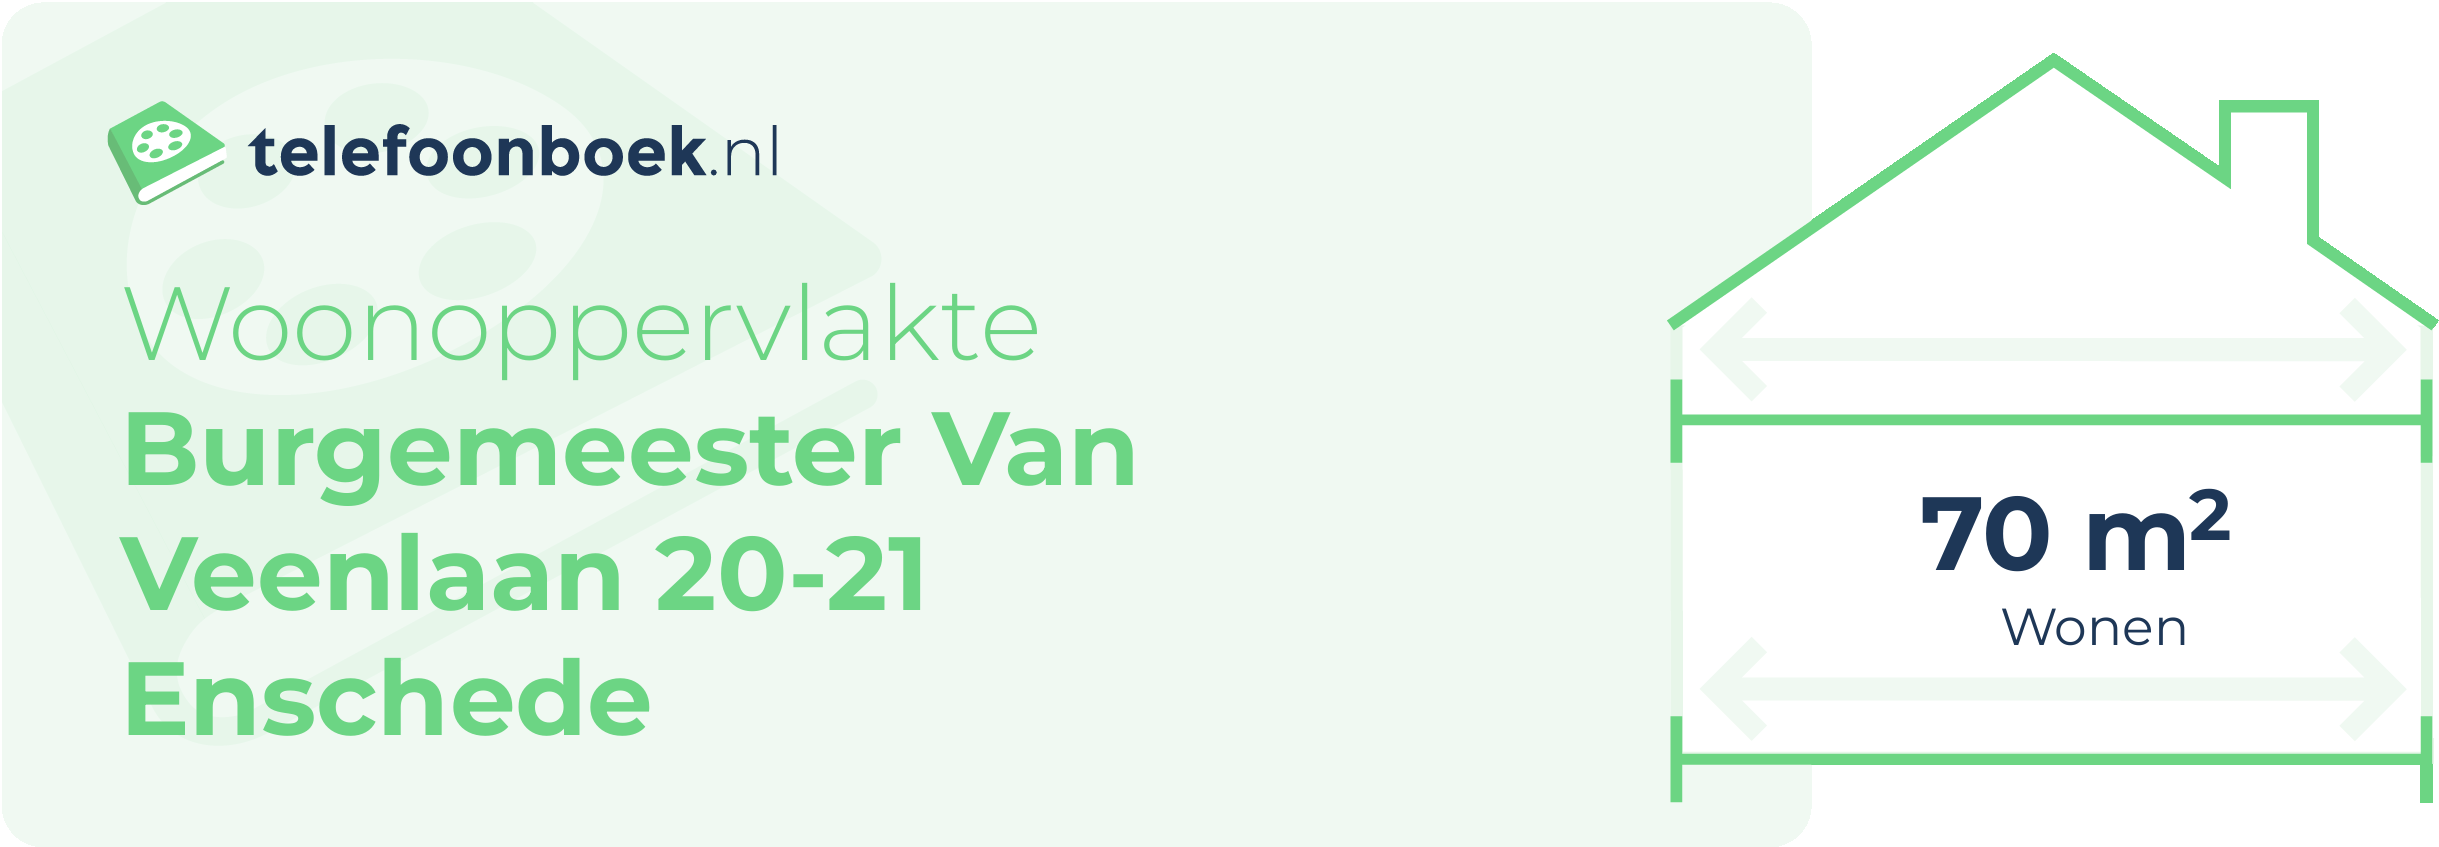 Woonoppervlakte Burgemeester Van Veenlaan 20-21 Enschede